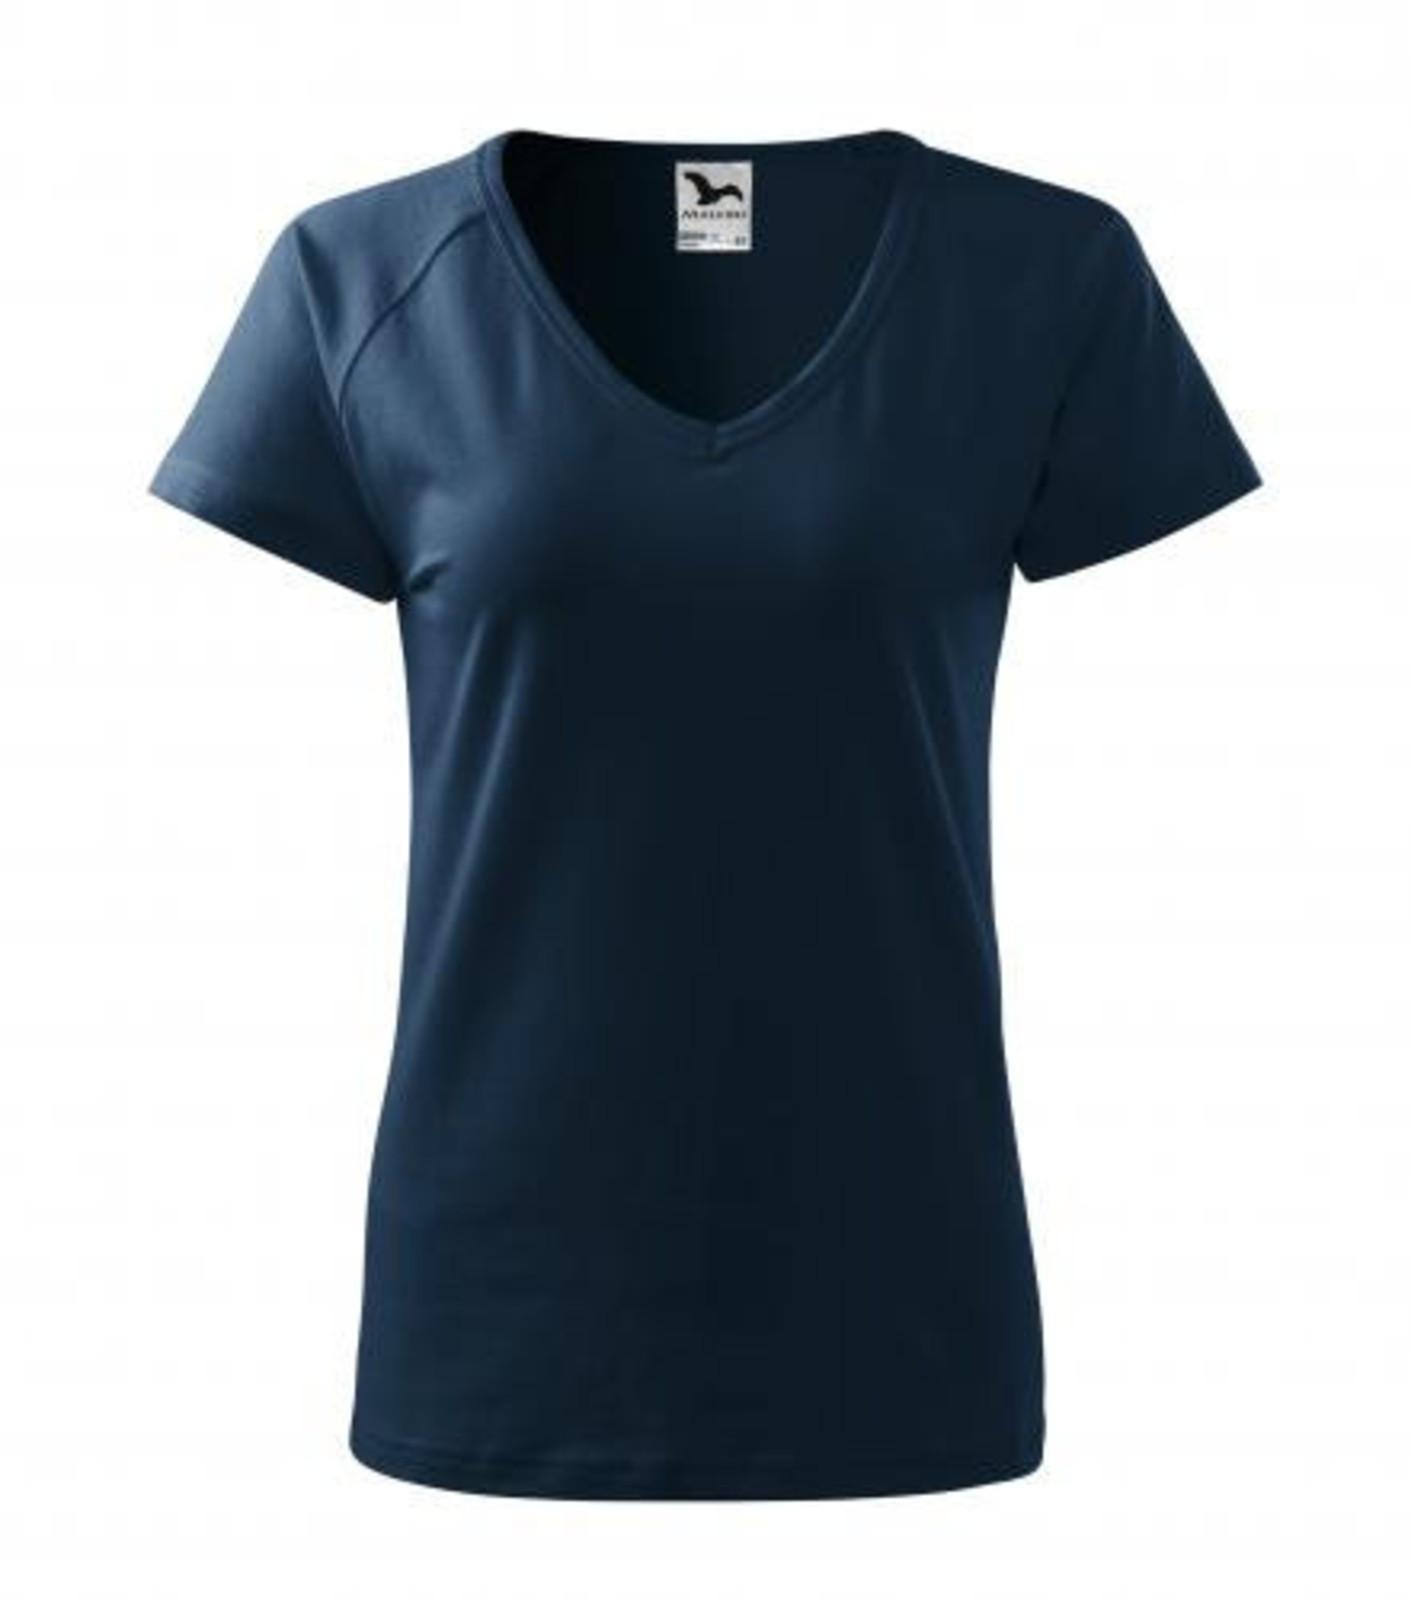 Dámske tričko s V výstrihom Adler Dream 128 - veľkosť: S, farba: tmavo modrá